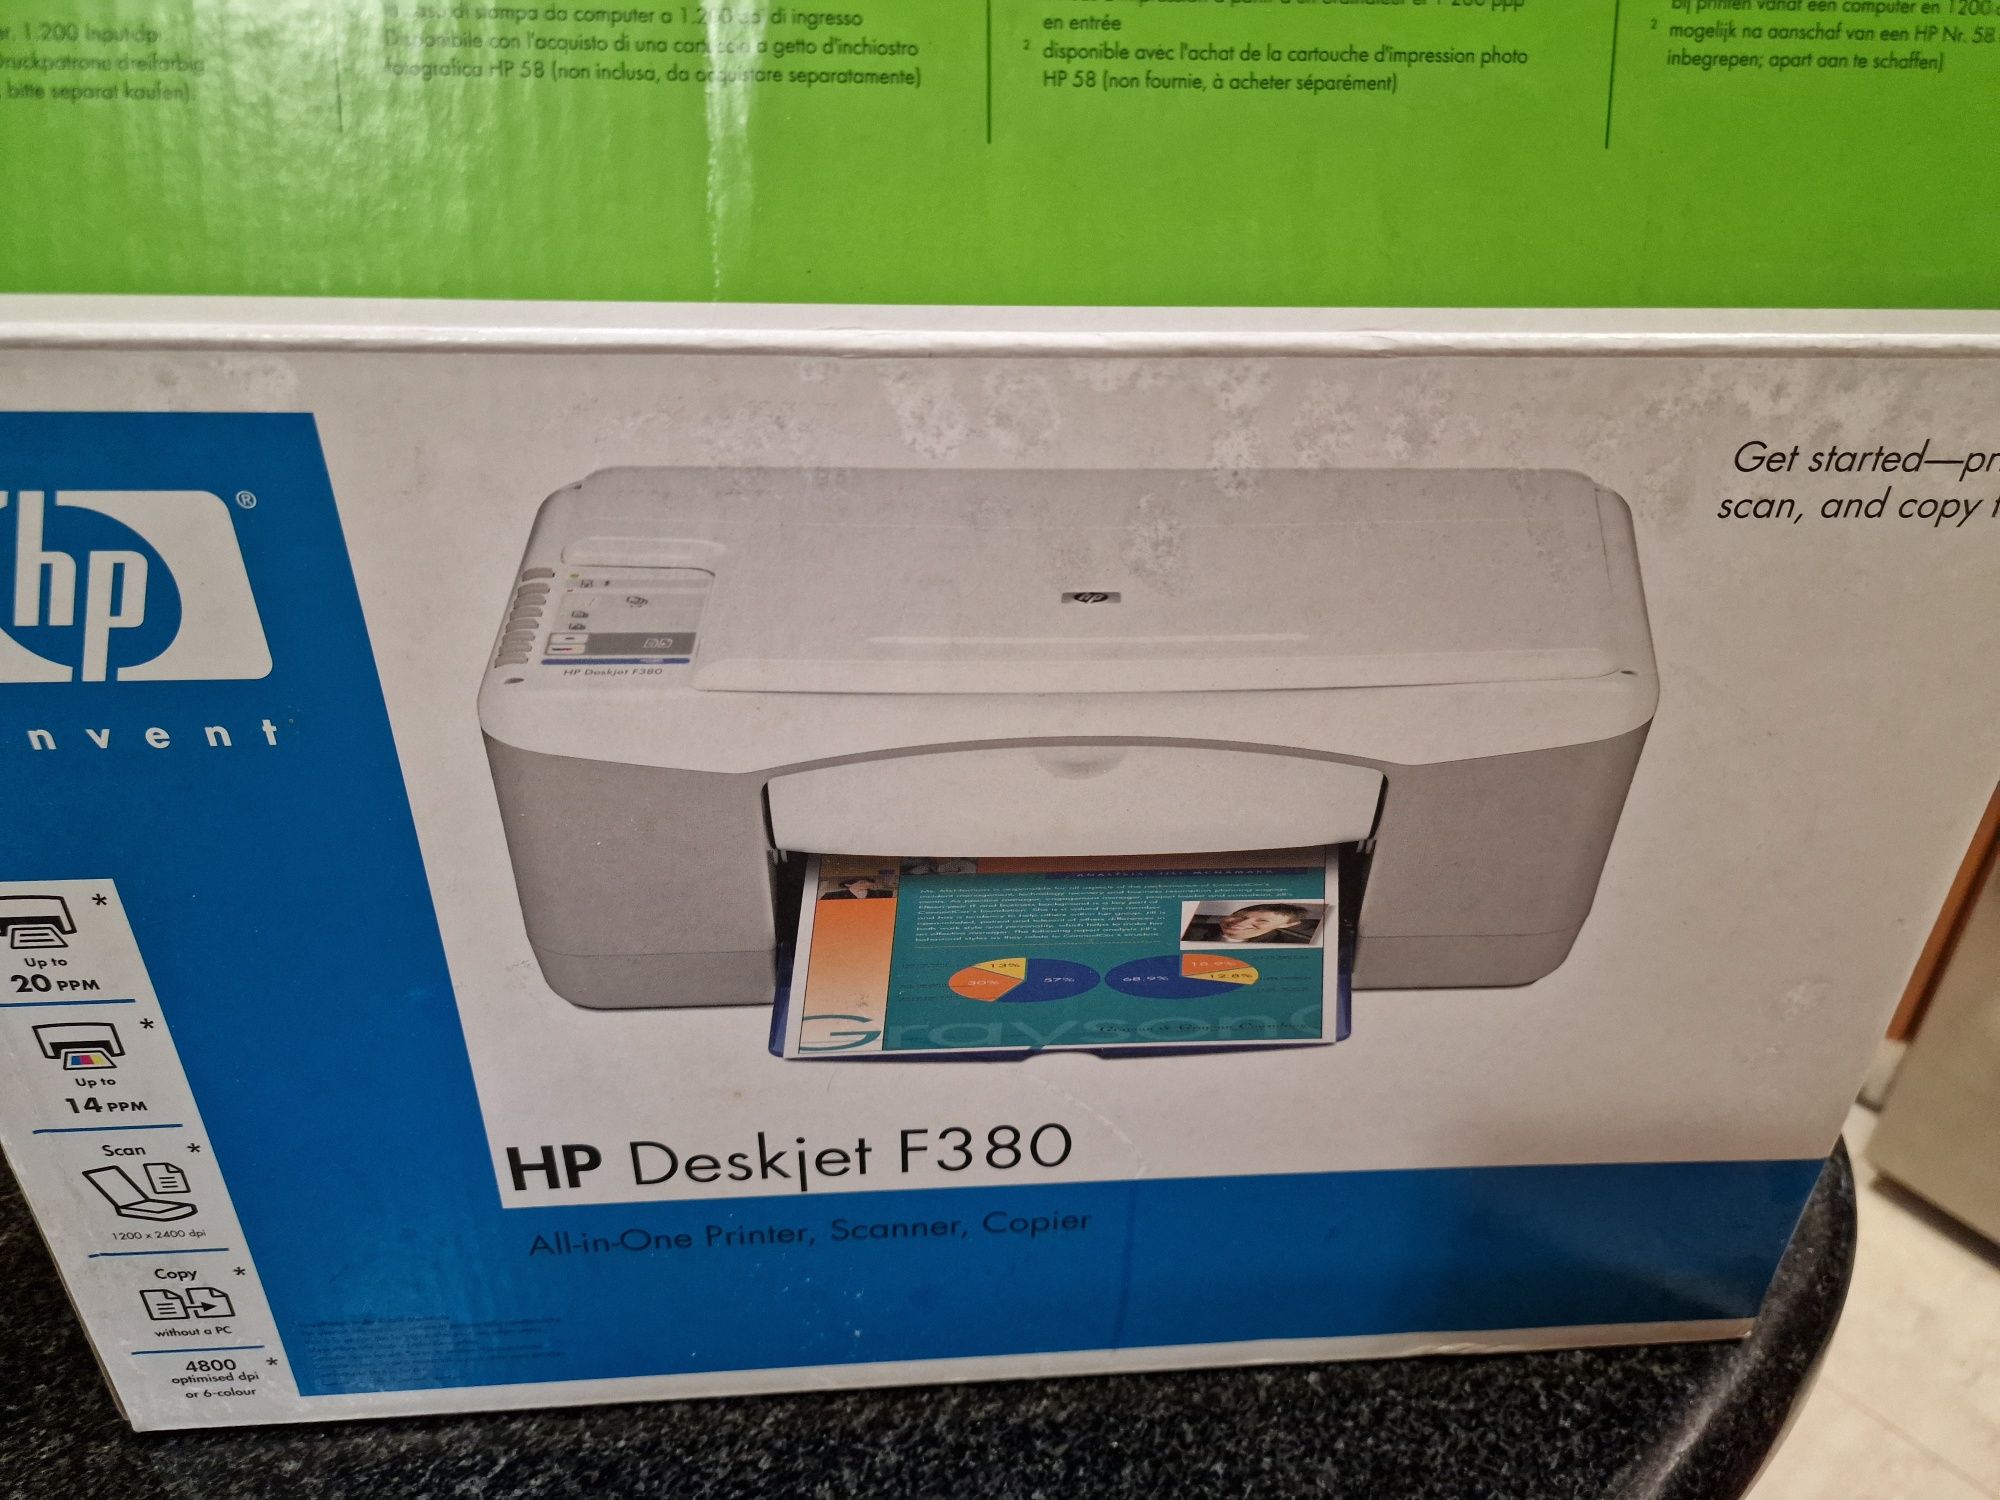 Impressora Deskjet F380